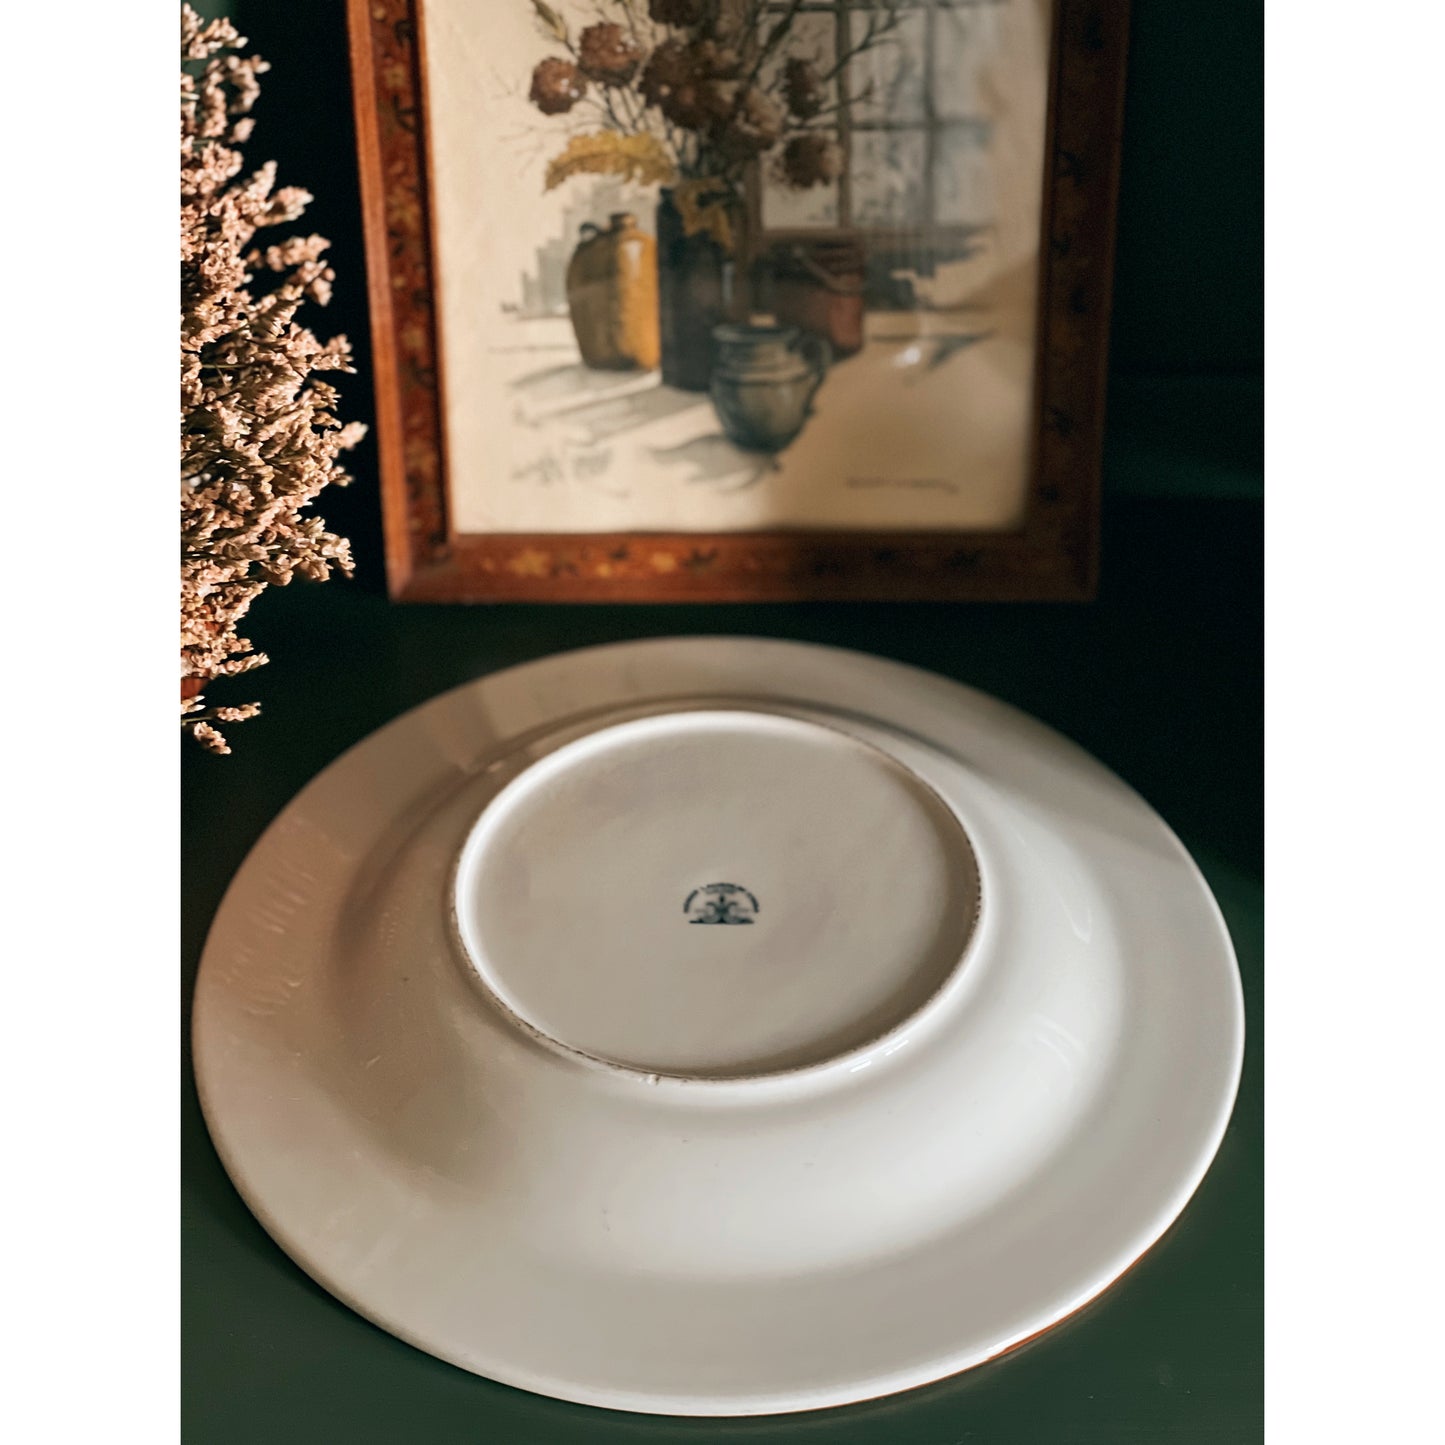 Vintage Homer Laughlin Best China Serving Bowl / Pasta Bowl